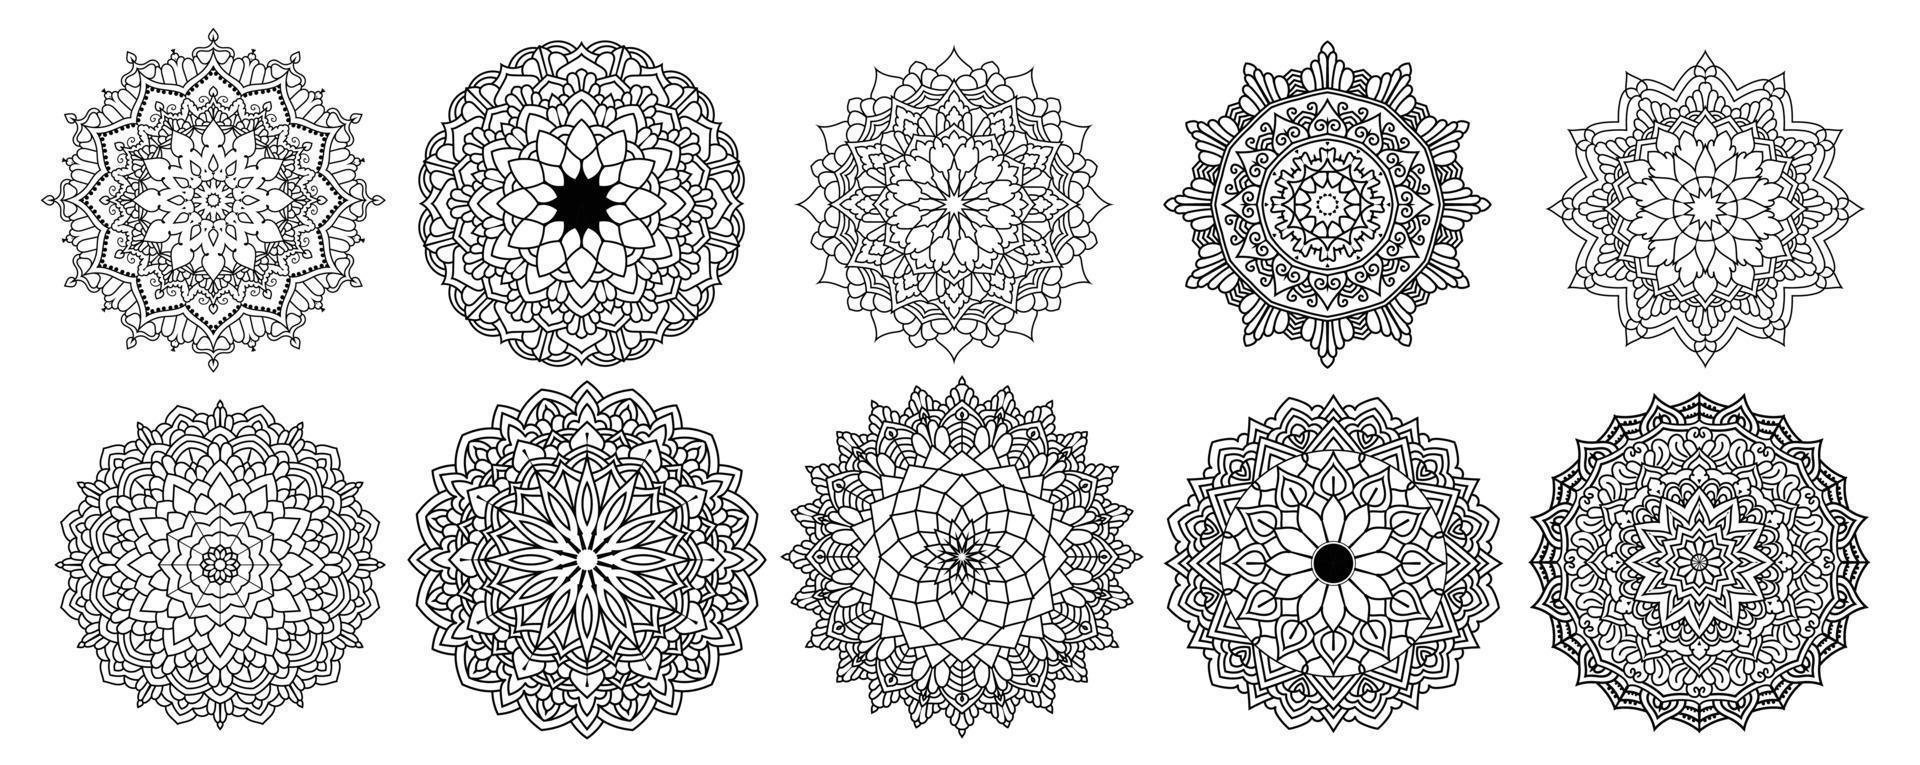 bloemen mandala vector pack van 10, ornament ronde set met een mandala, vintage decoratieve elementen. oosters patroon, vectorillustratie. islam, arabisch, turks, pakistan, chinees, mandalabundel